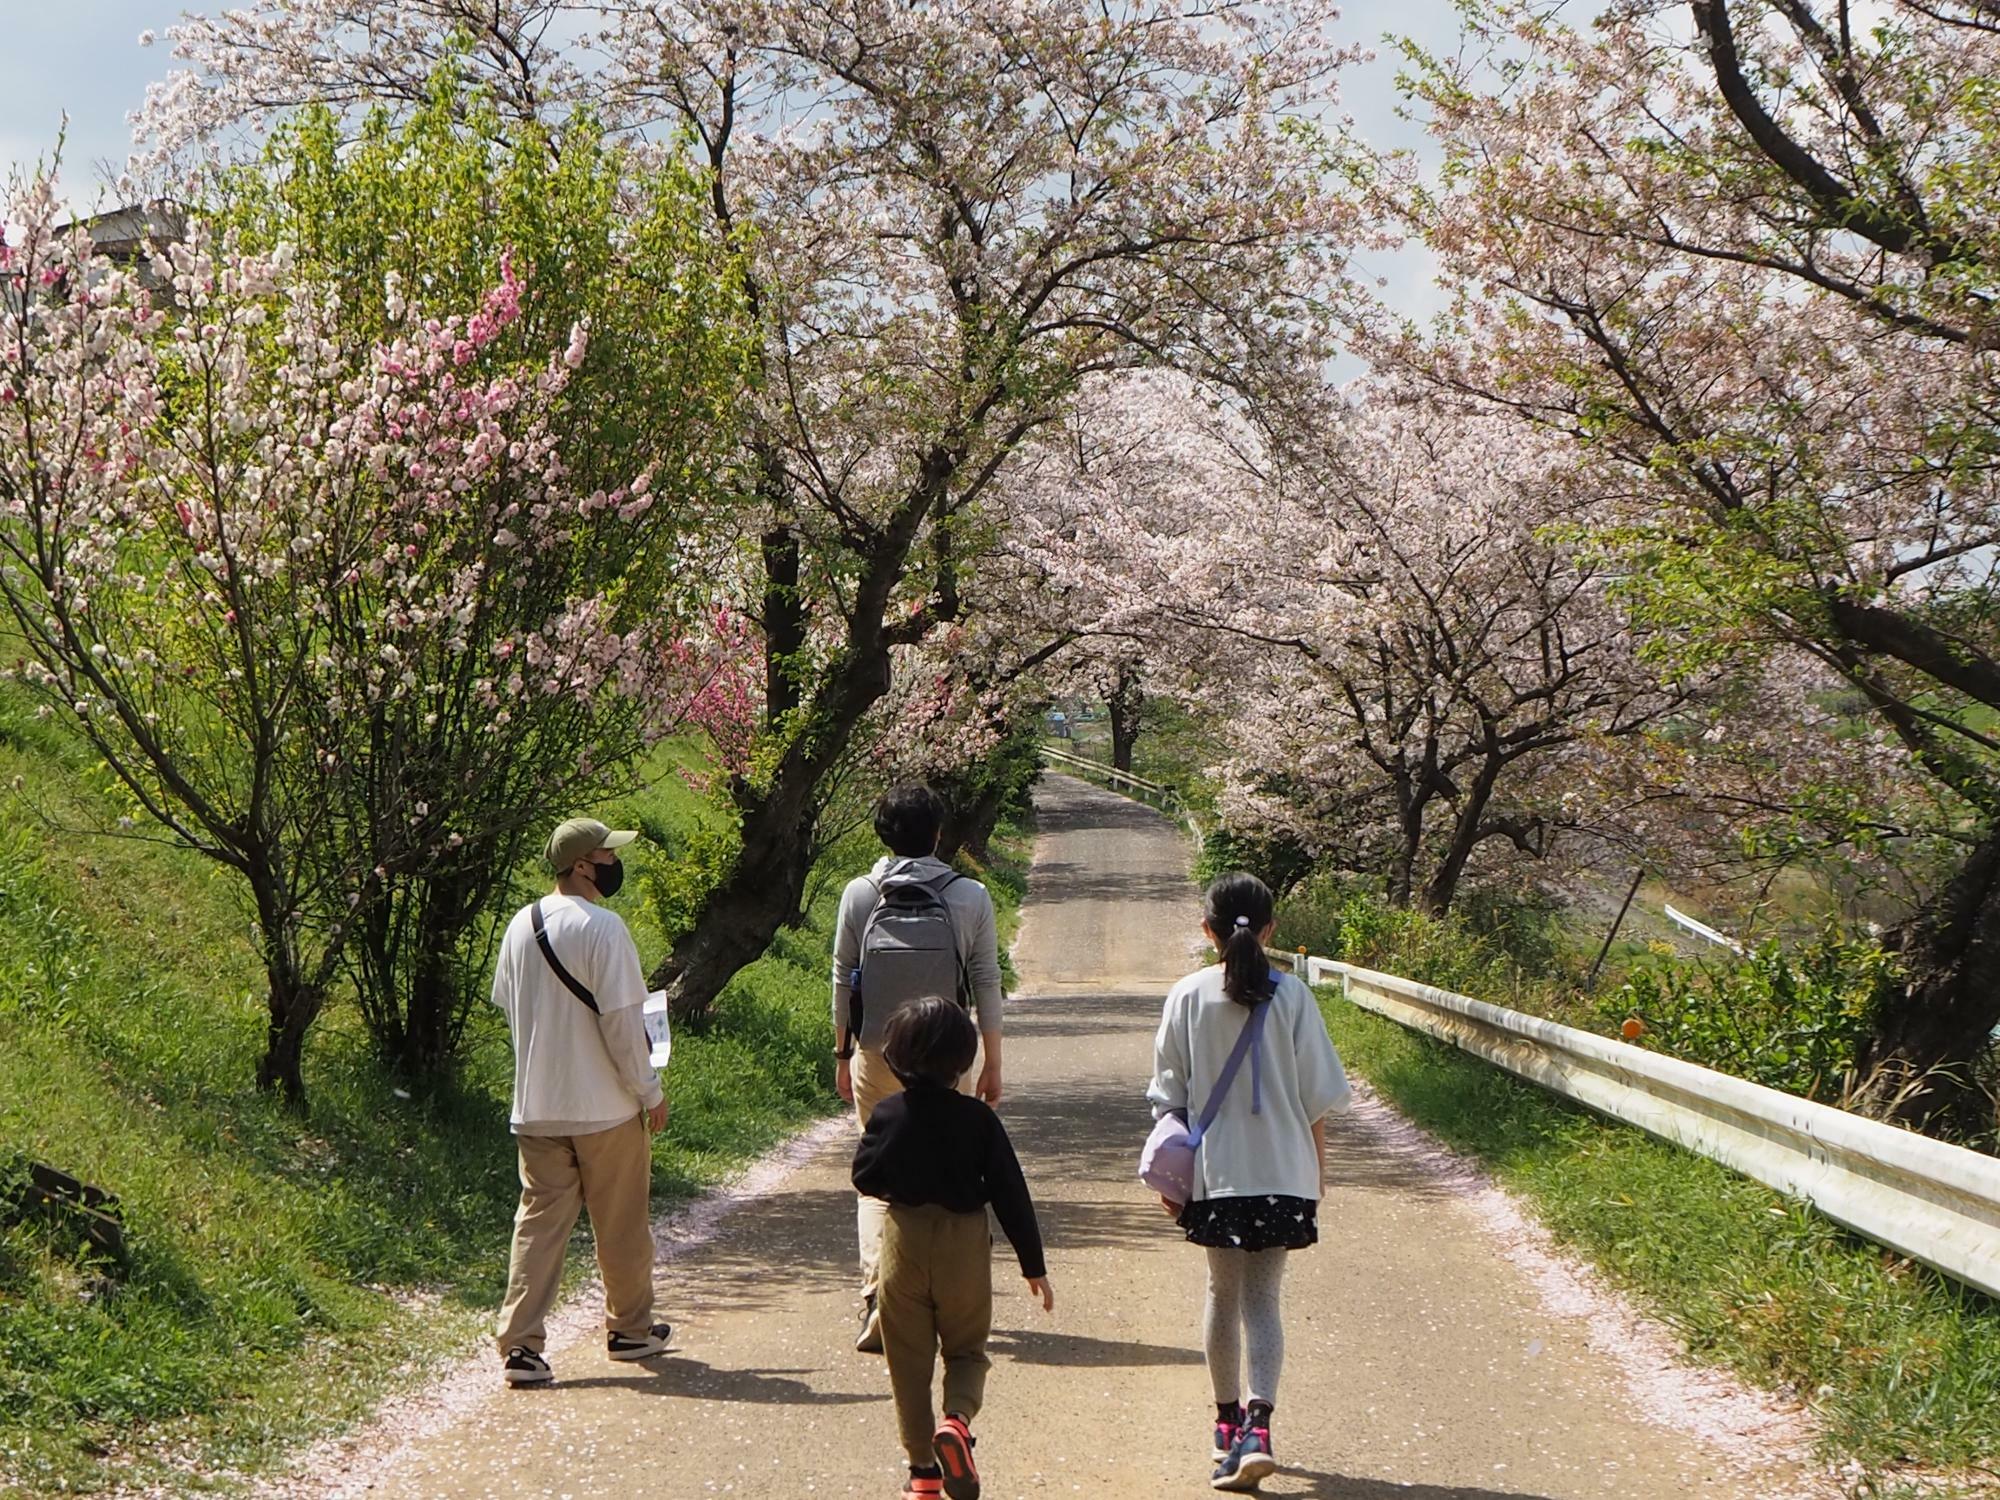 ギリギリ桜が咲いている時期だったので、より自然が楽しめました。